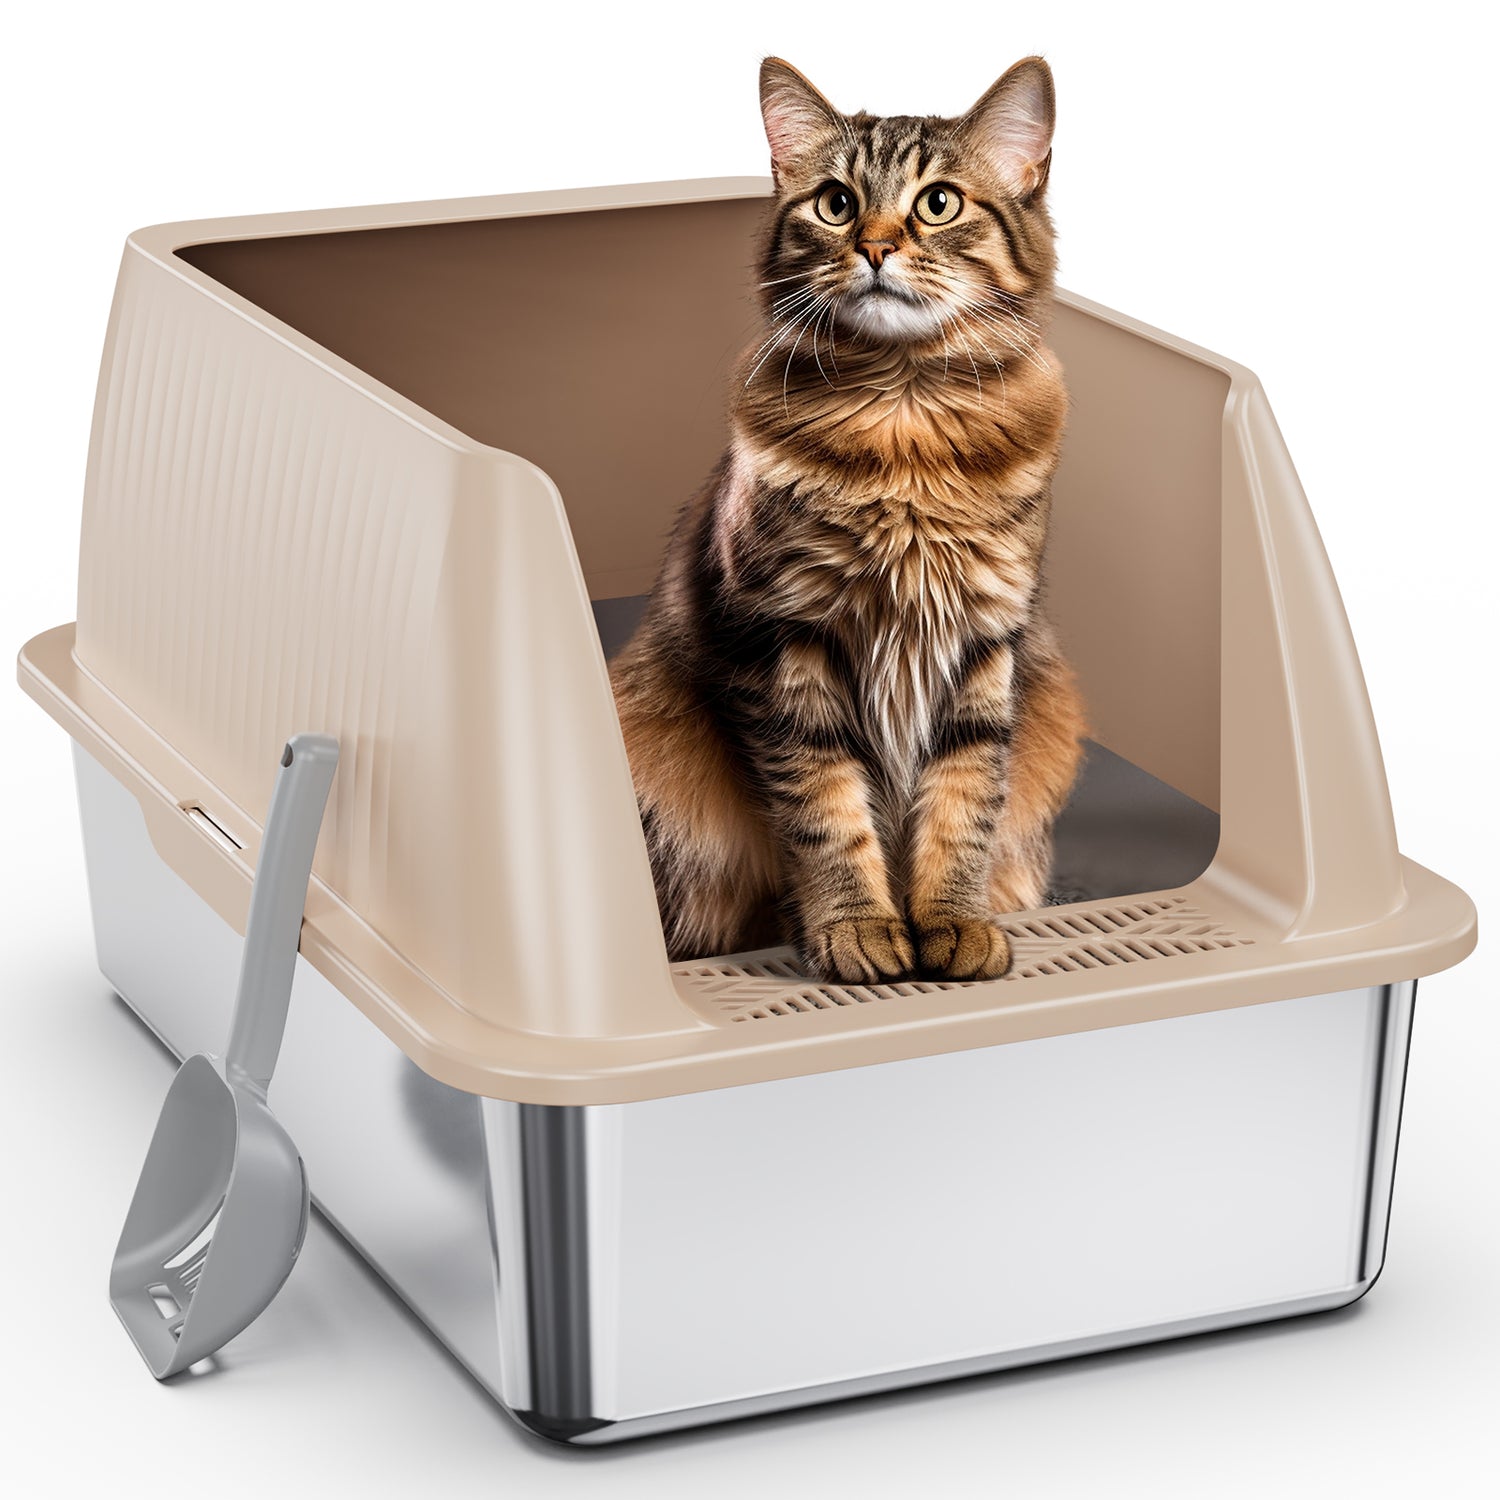 Stainless Steel Cat Litter Box V2